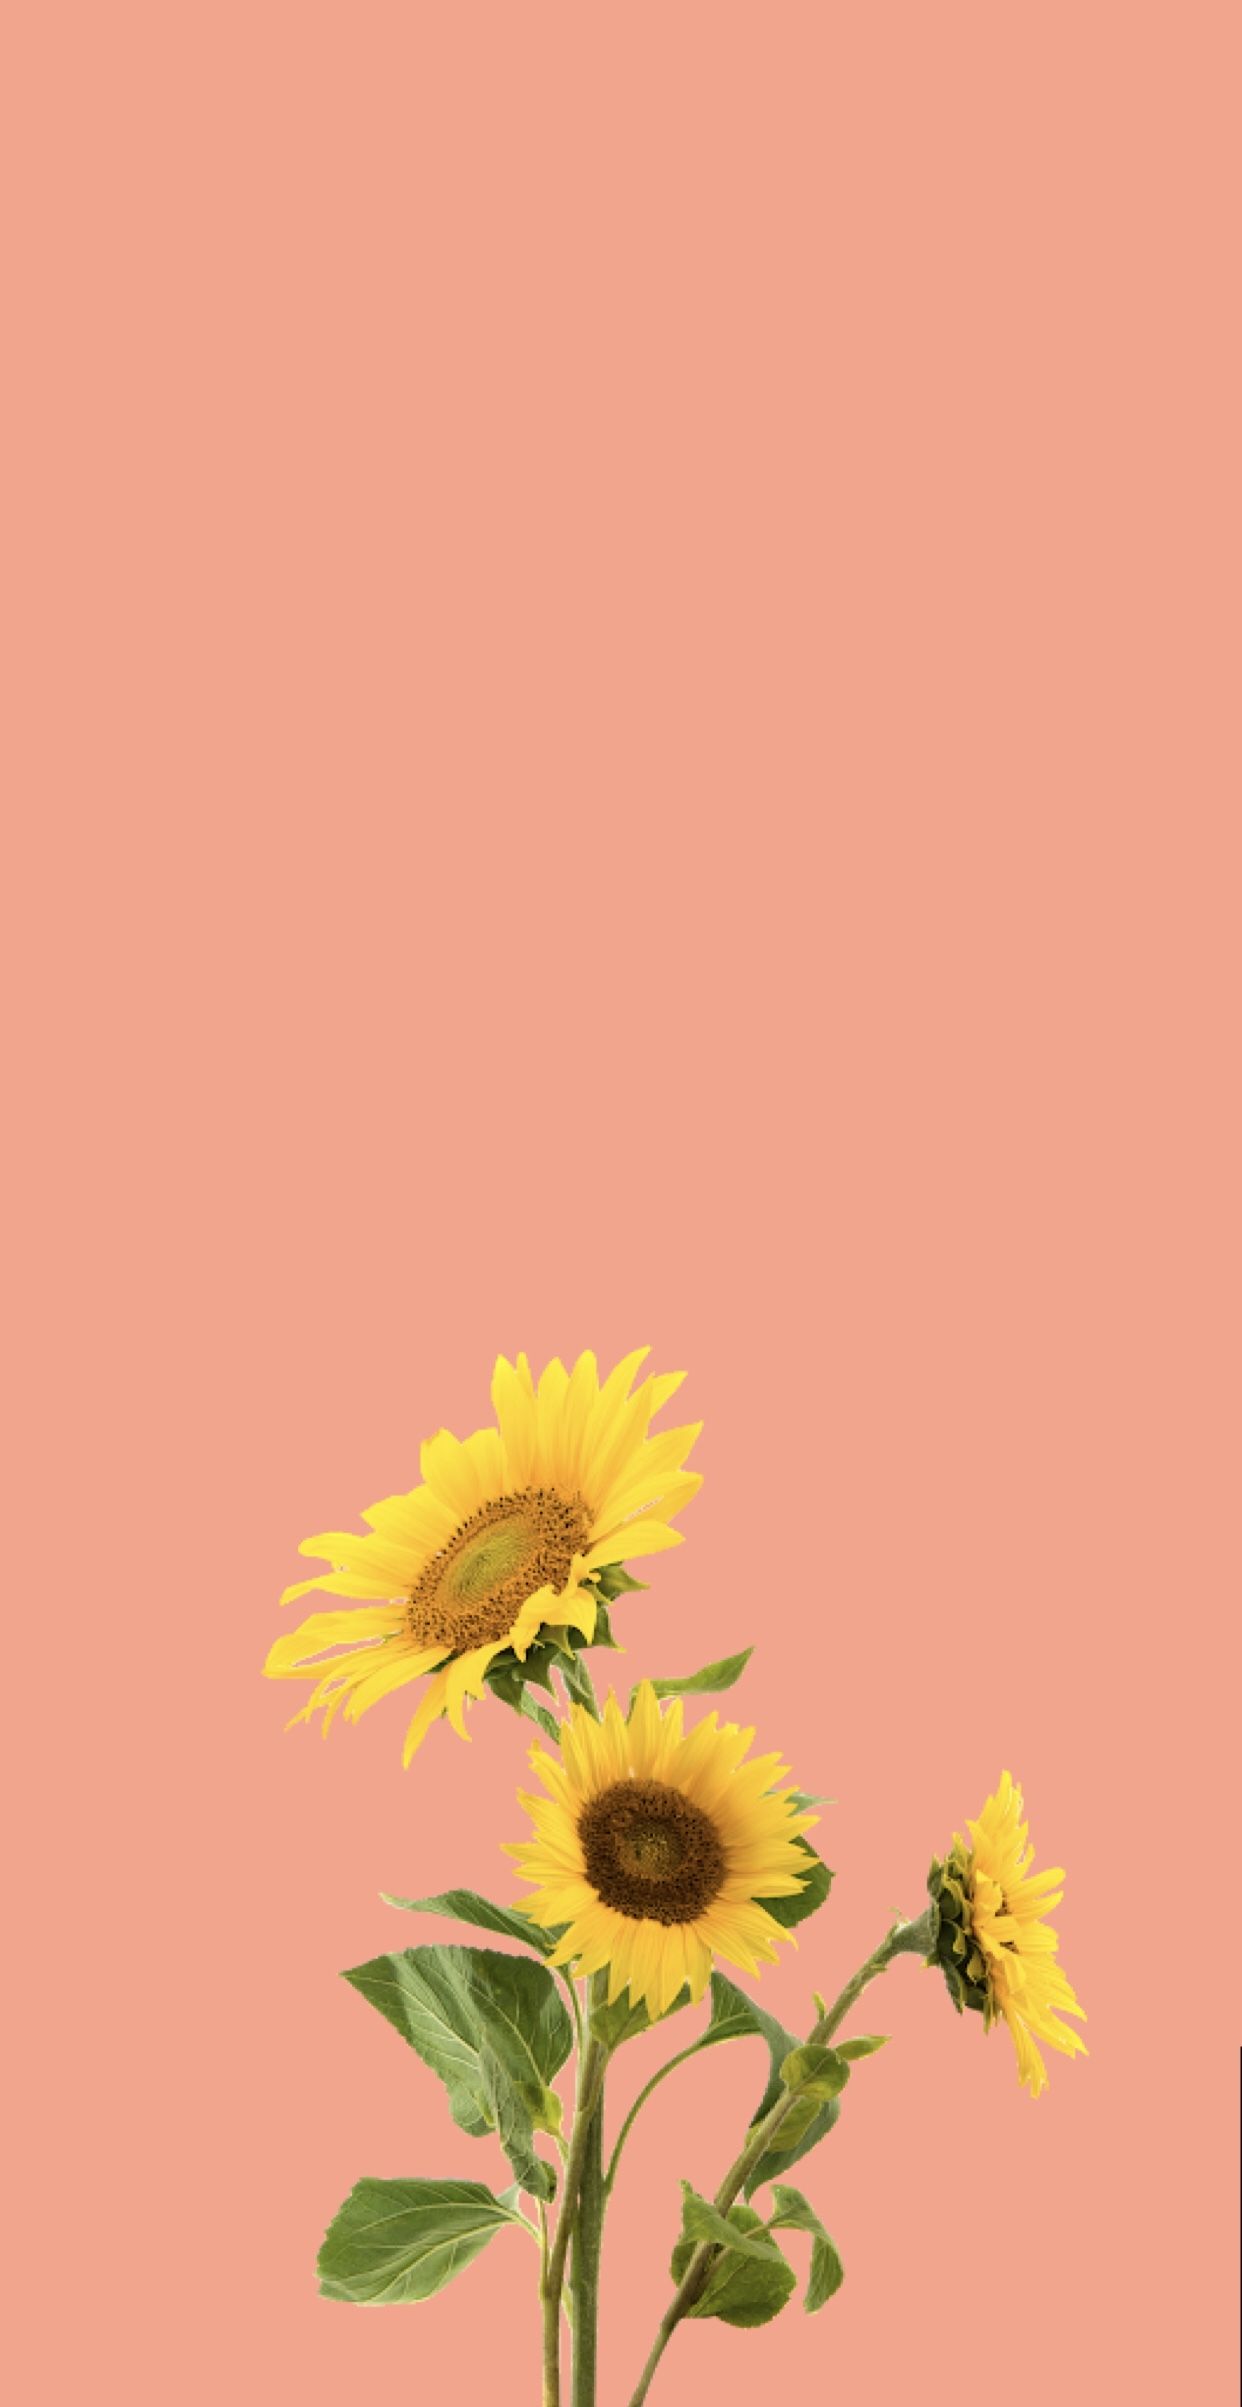 Cute Sunflower Wallpapers